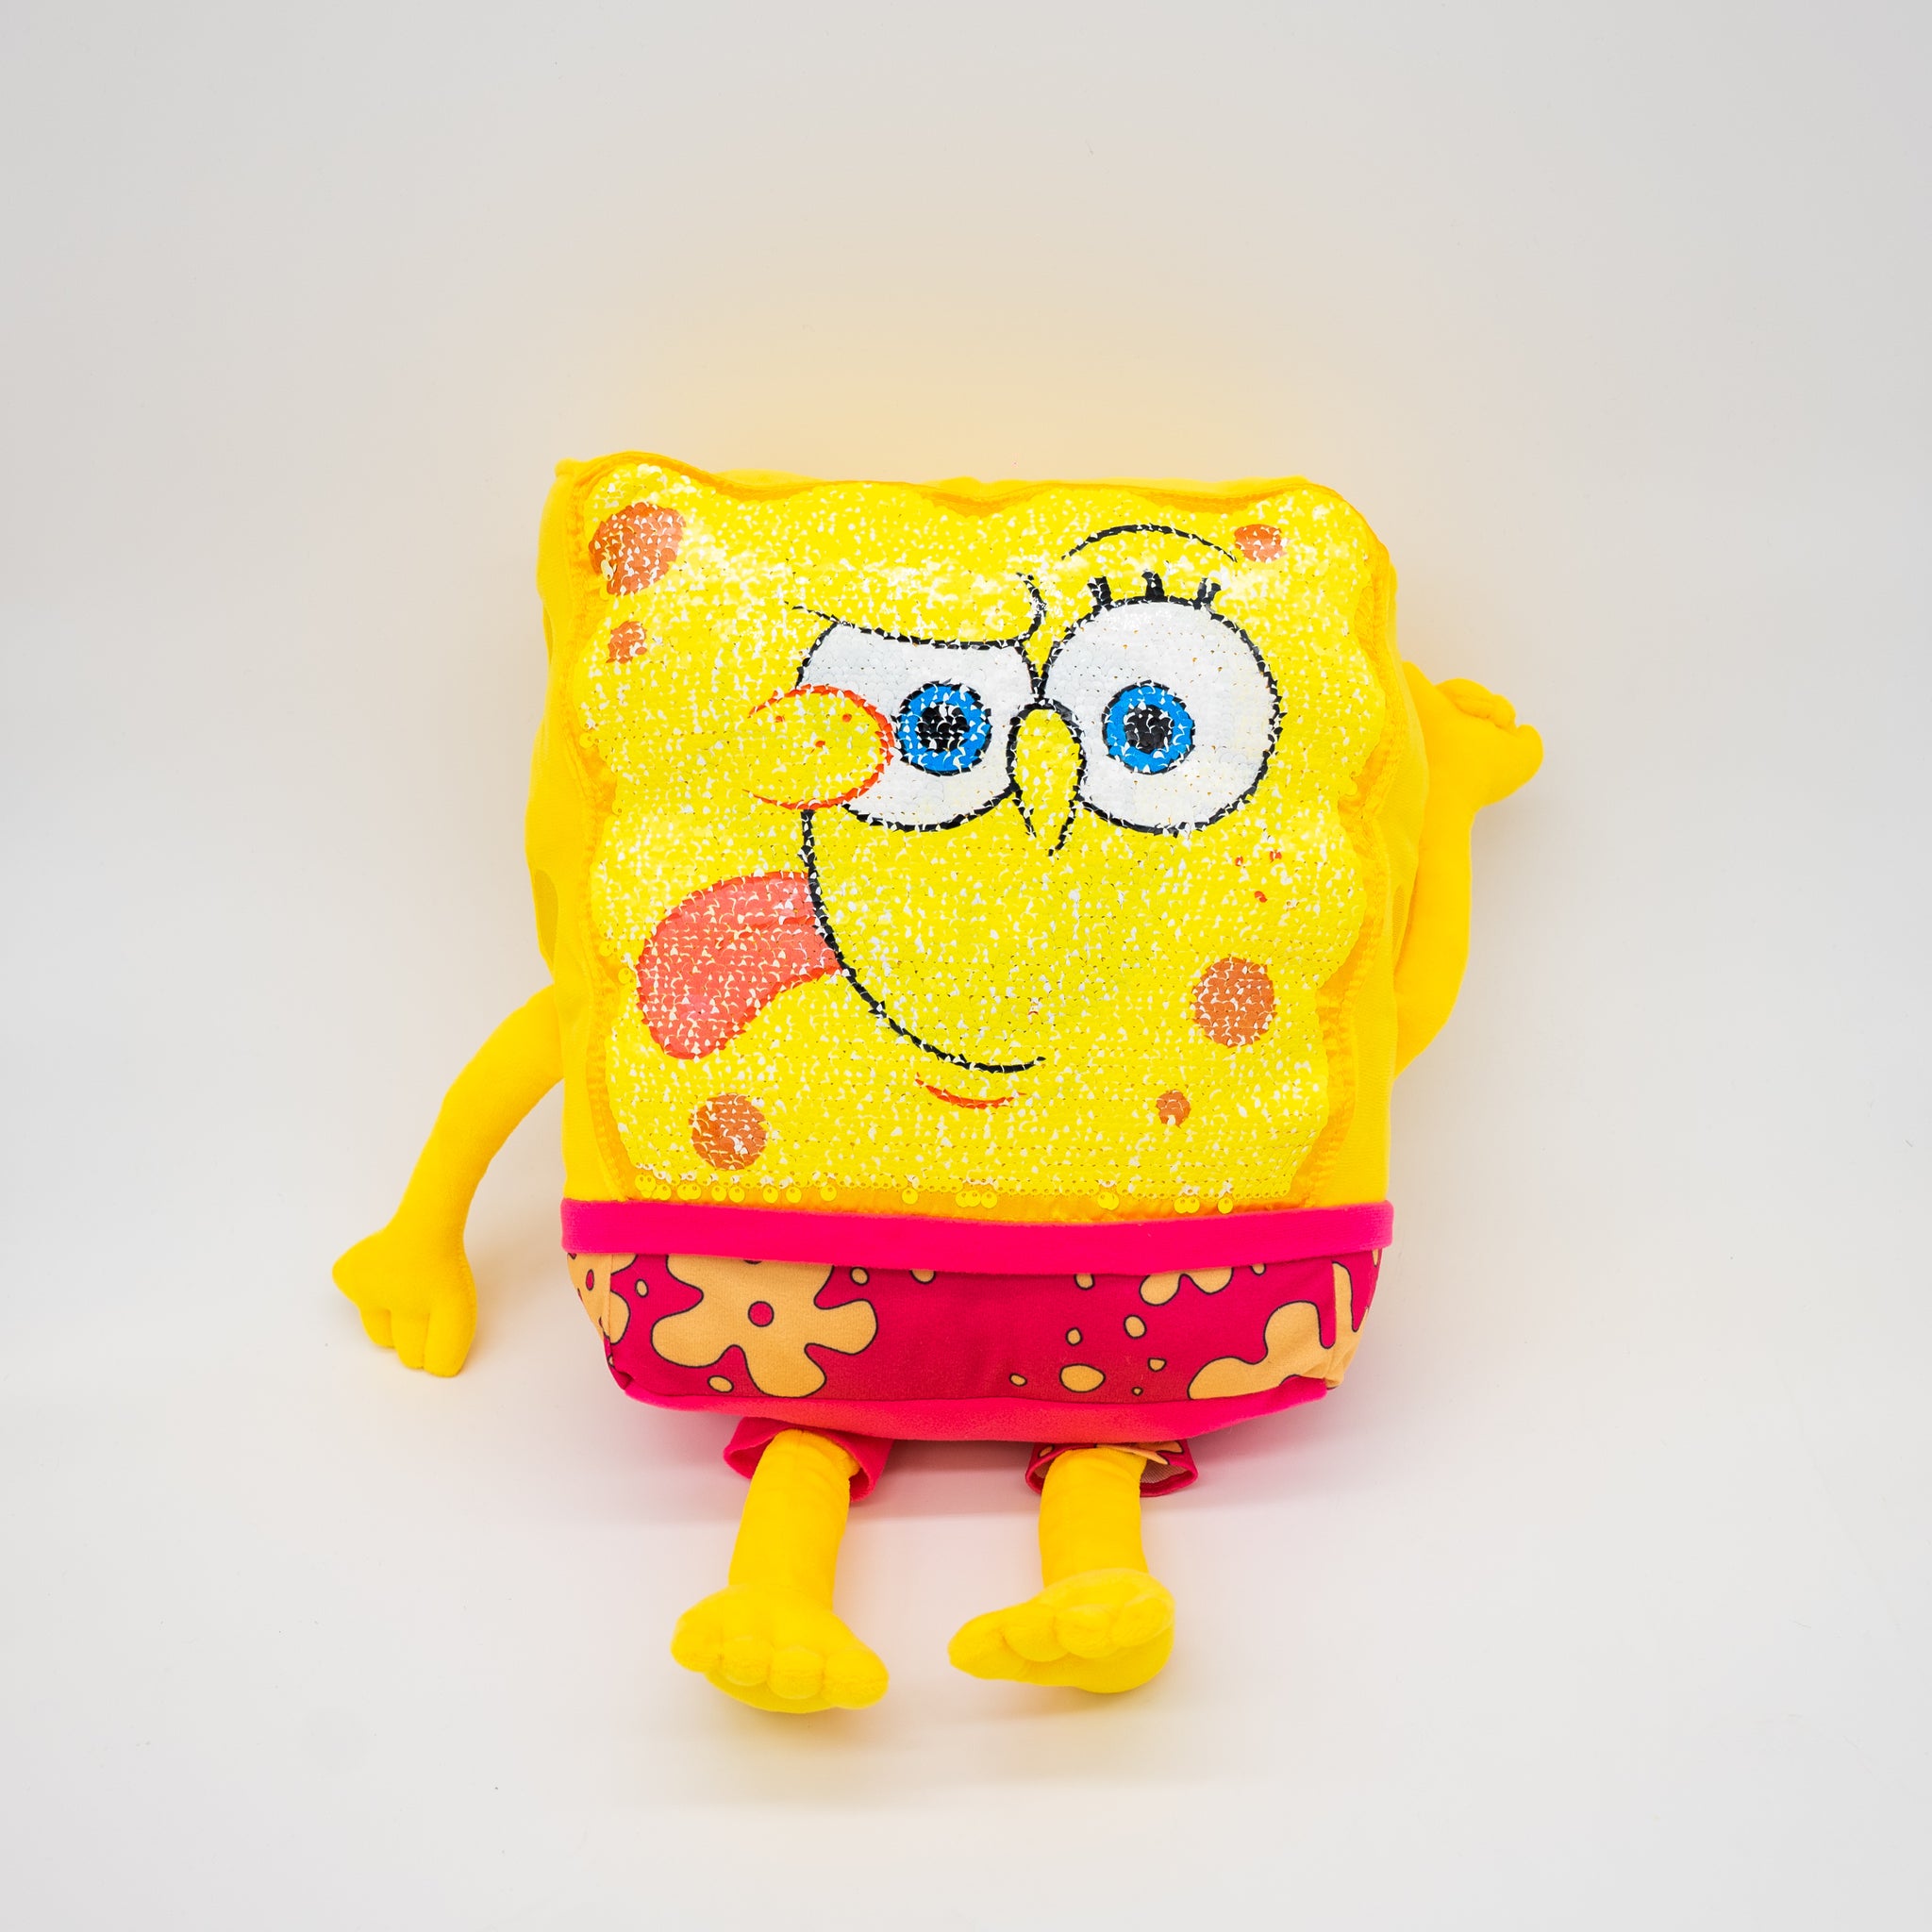 18" Sequin SpongeBob Plush